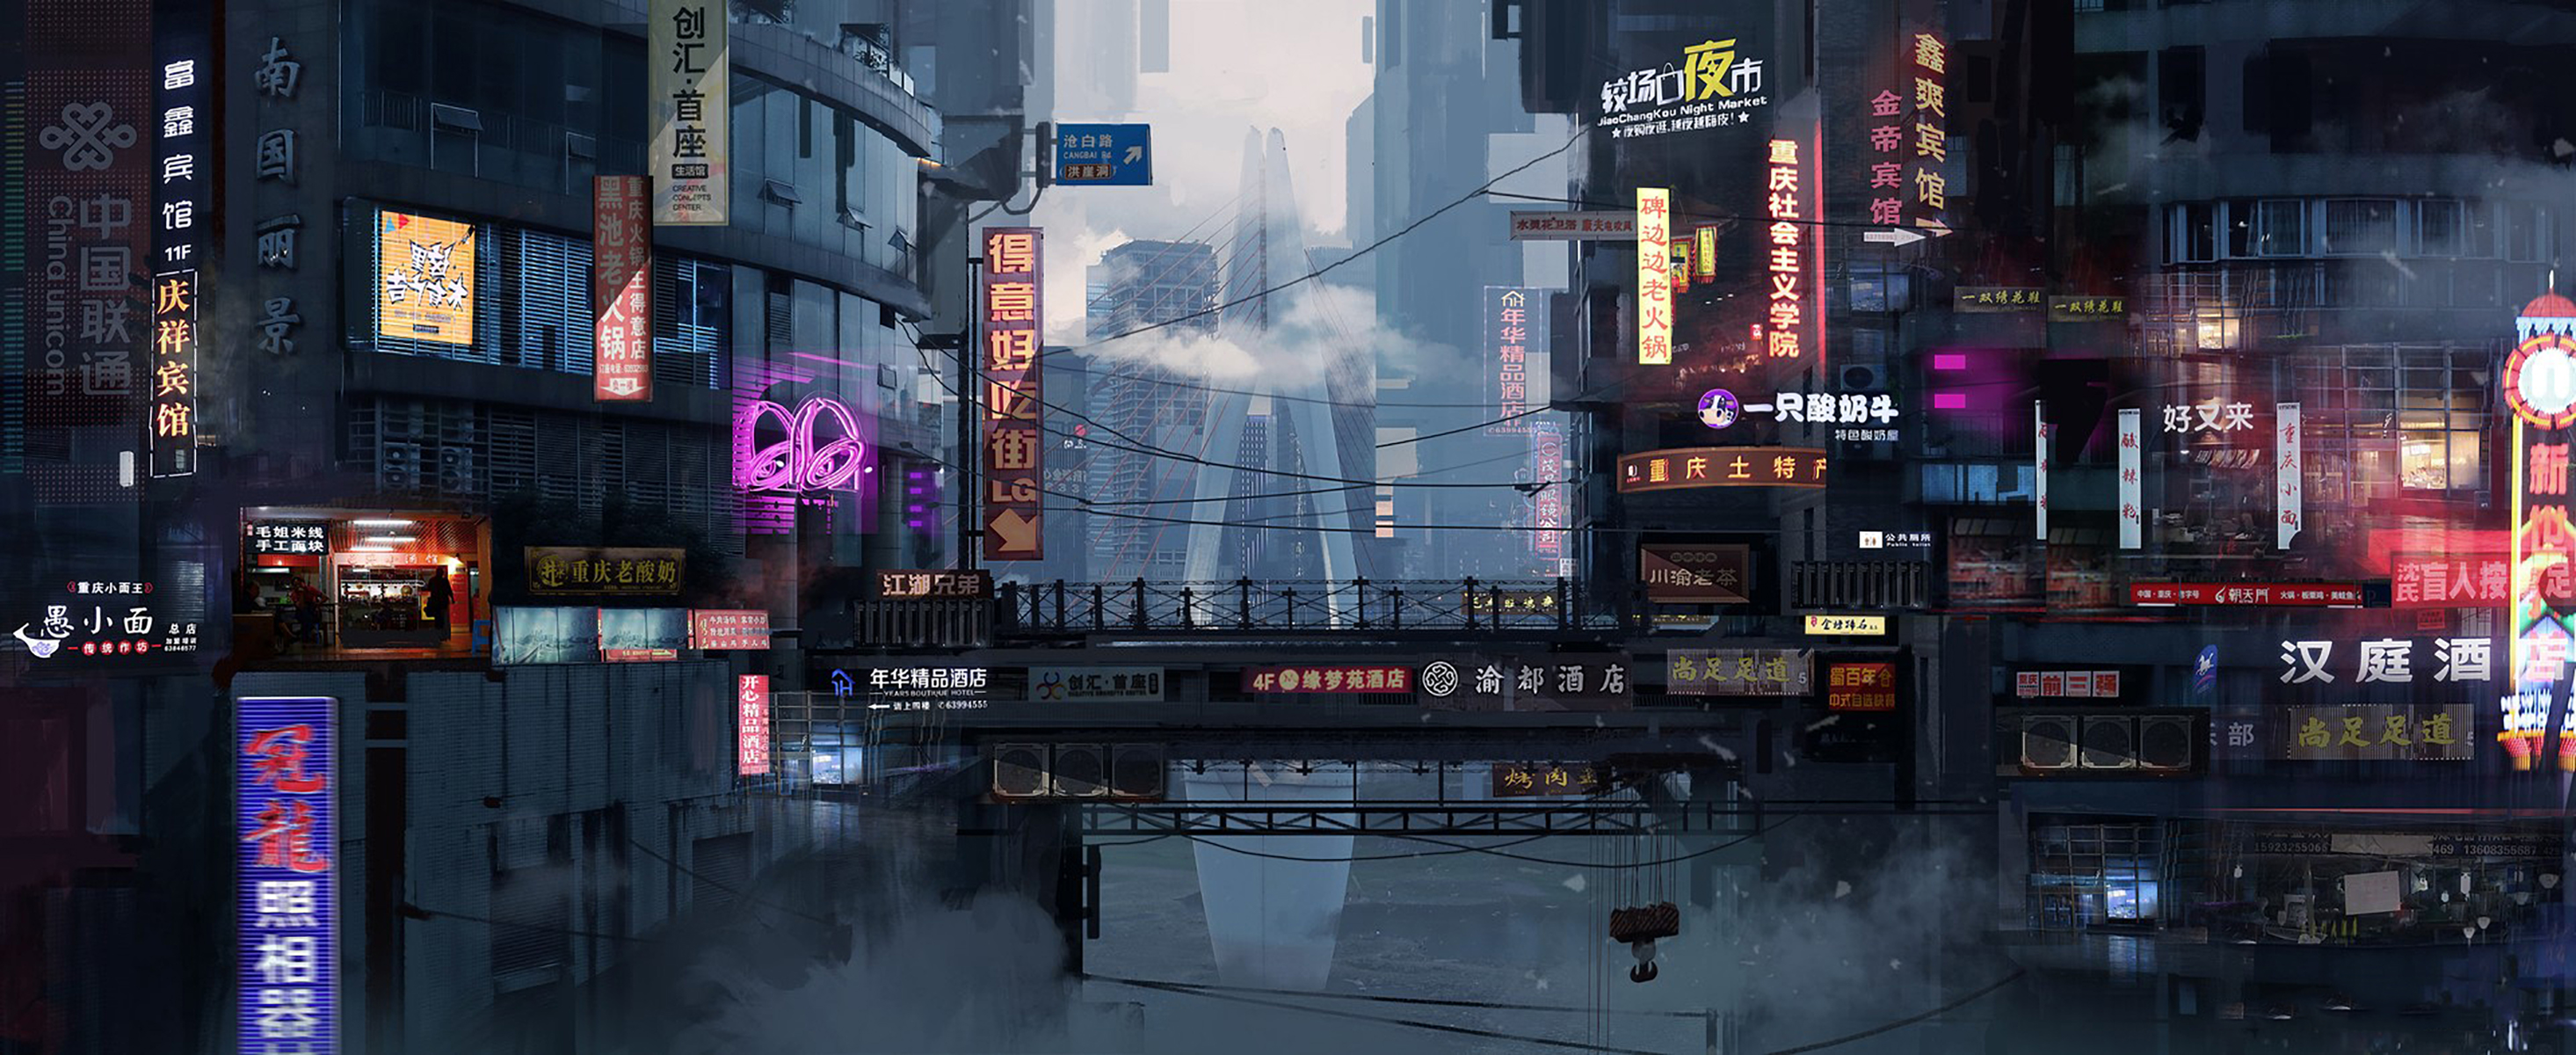 China Cyberpunk Cityscape Neon Sign 2931x1200